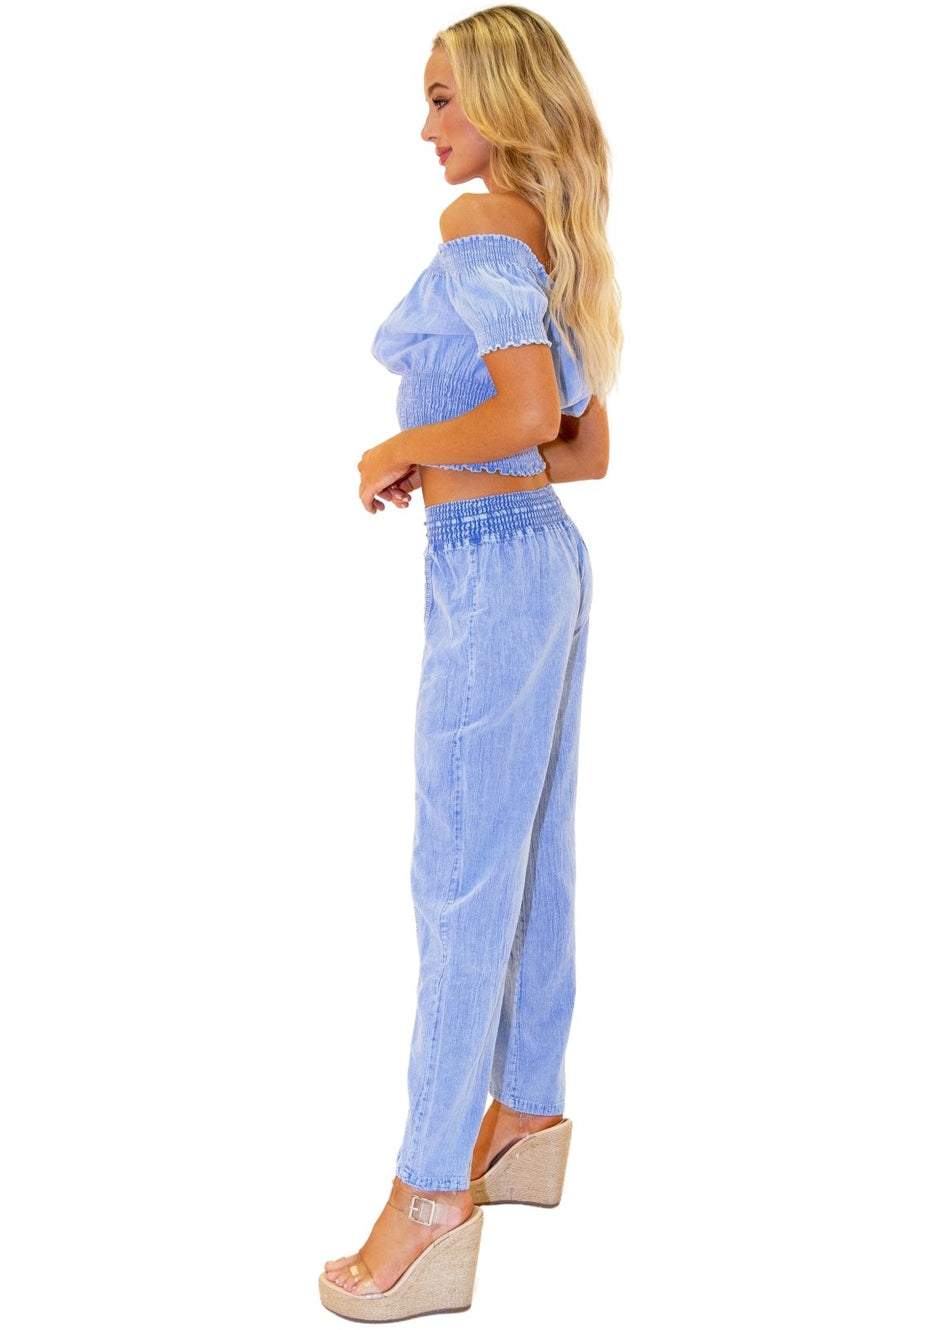 Magnolia' Crochet Front Detail Pants Blue - Seaspice Resort Wear